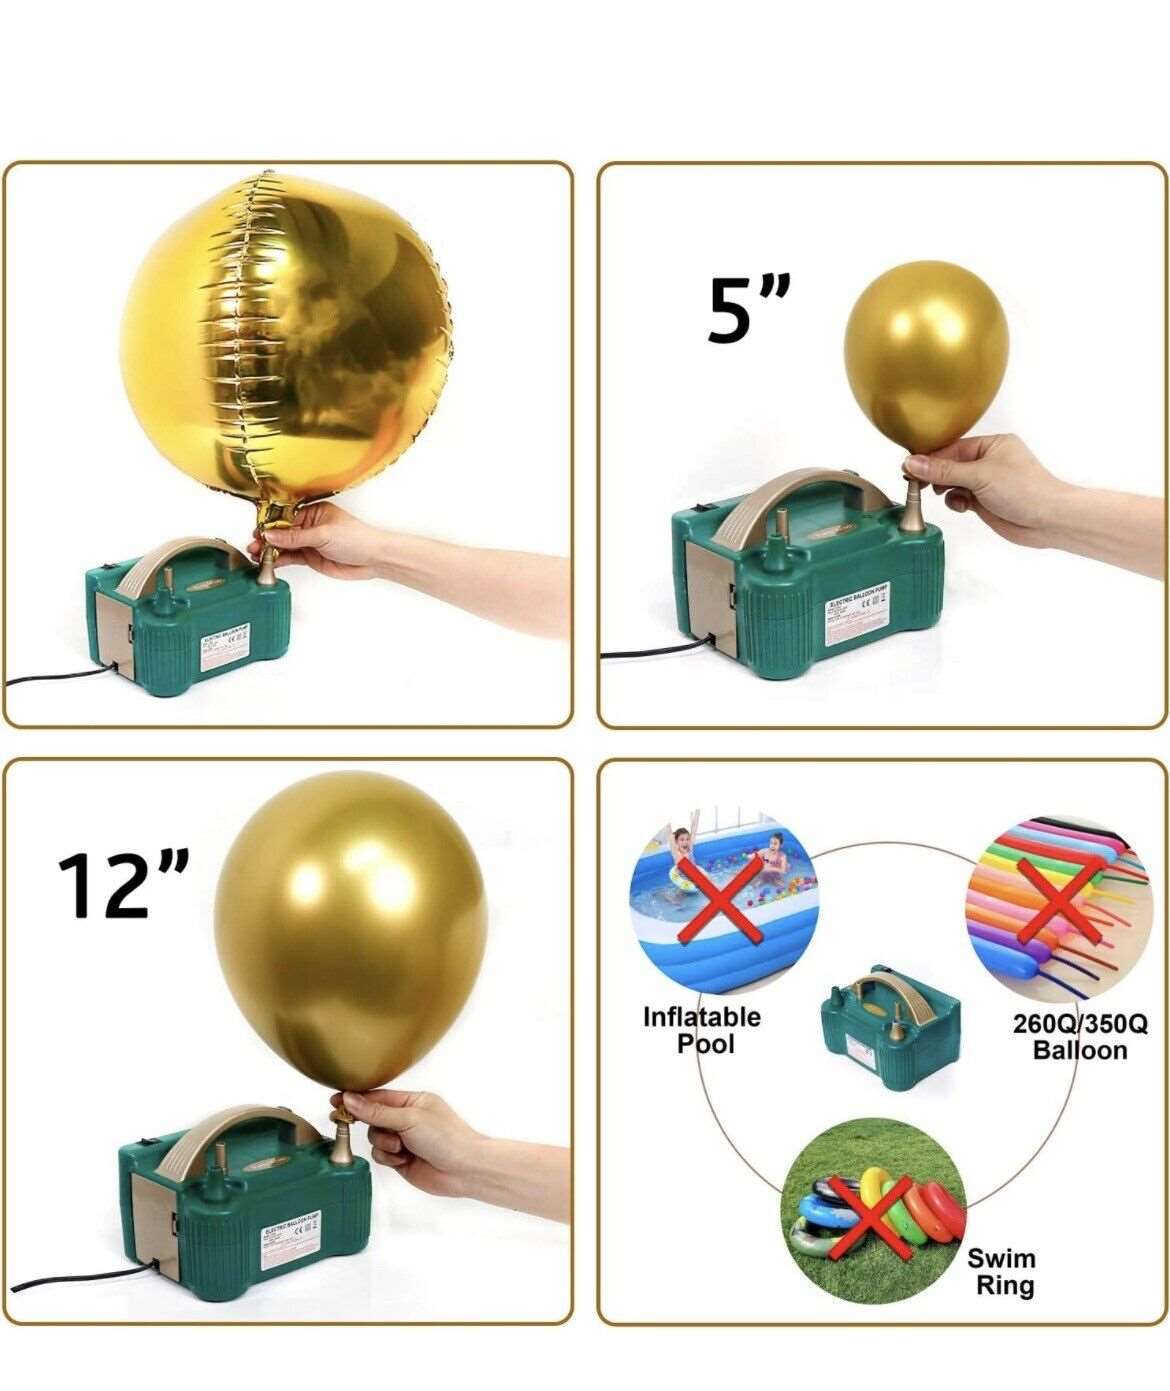 Electric Balloon Pump Kit